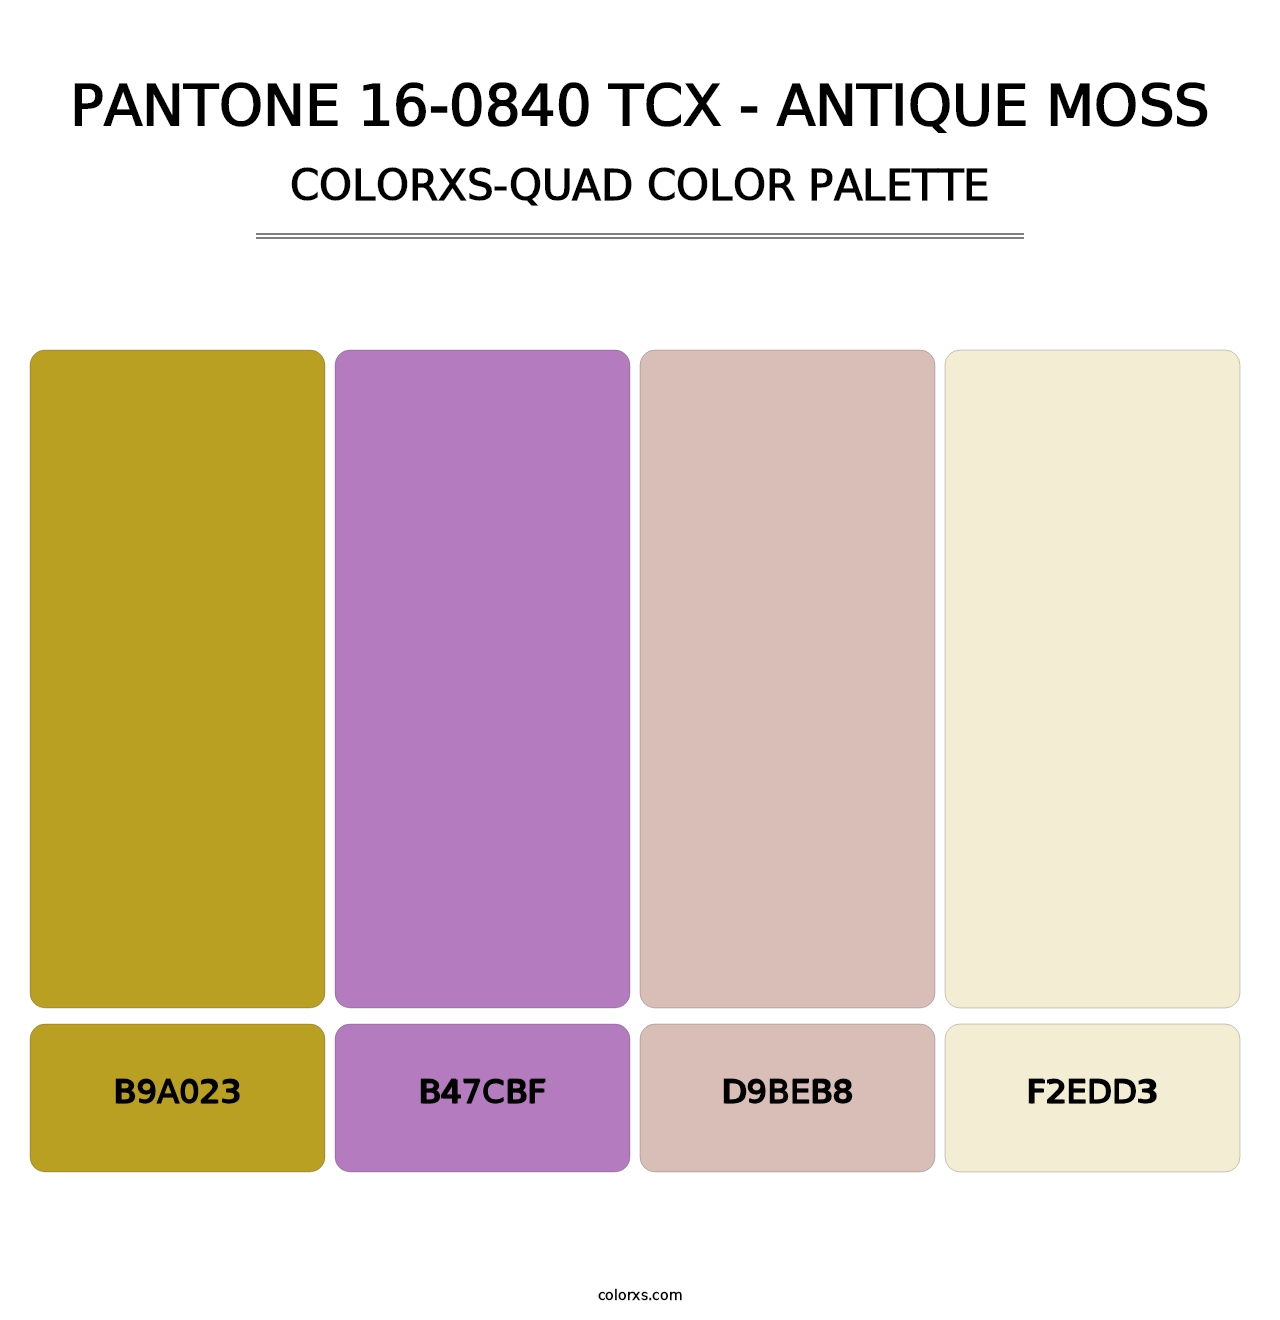 PANTONE 16-0840 TCX - Antique Moss - Colorxs Quad Palette